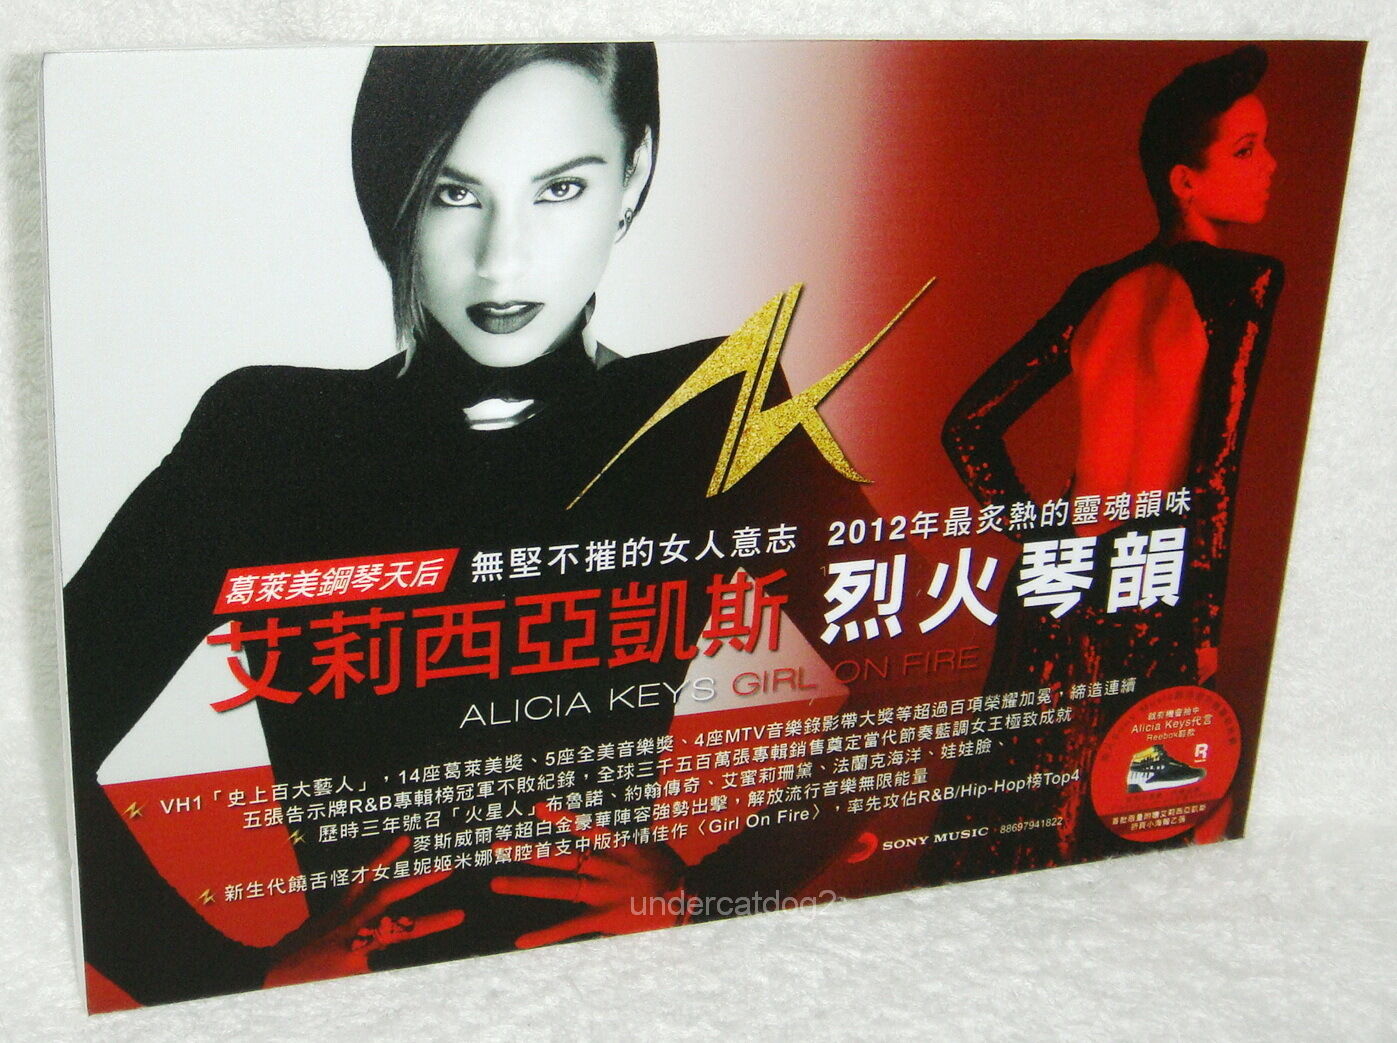 Alicia Keys  Girl On Fire Taiwan Promo Display